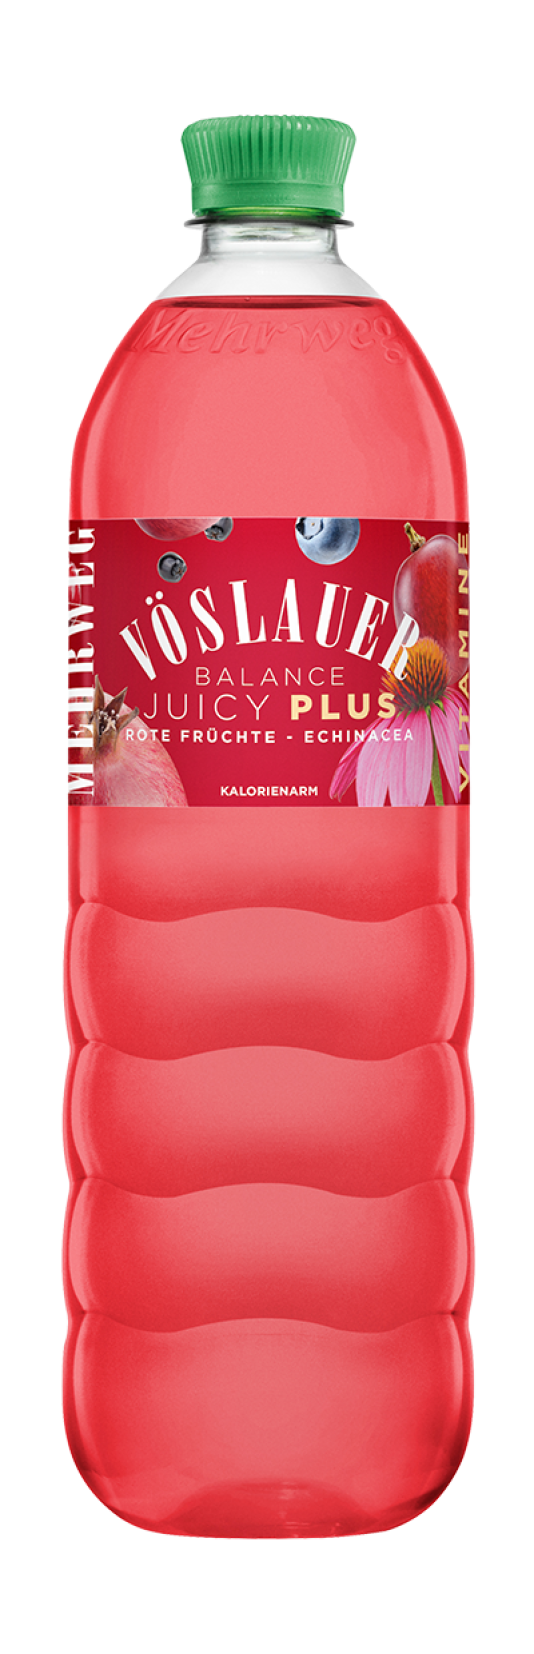 Juicy Plus Rote Früchte - Echinacea 1,0 l PET-Mehrweg